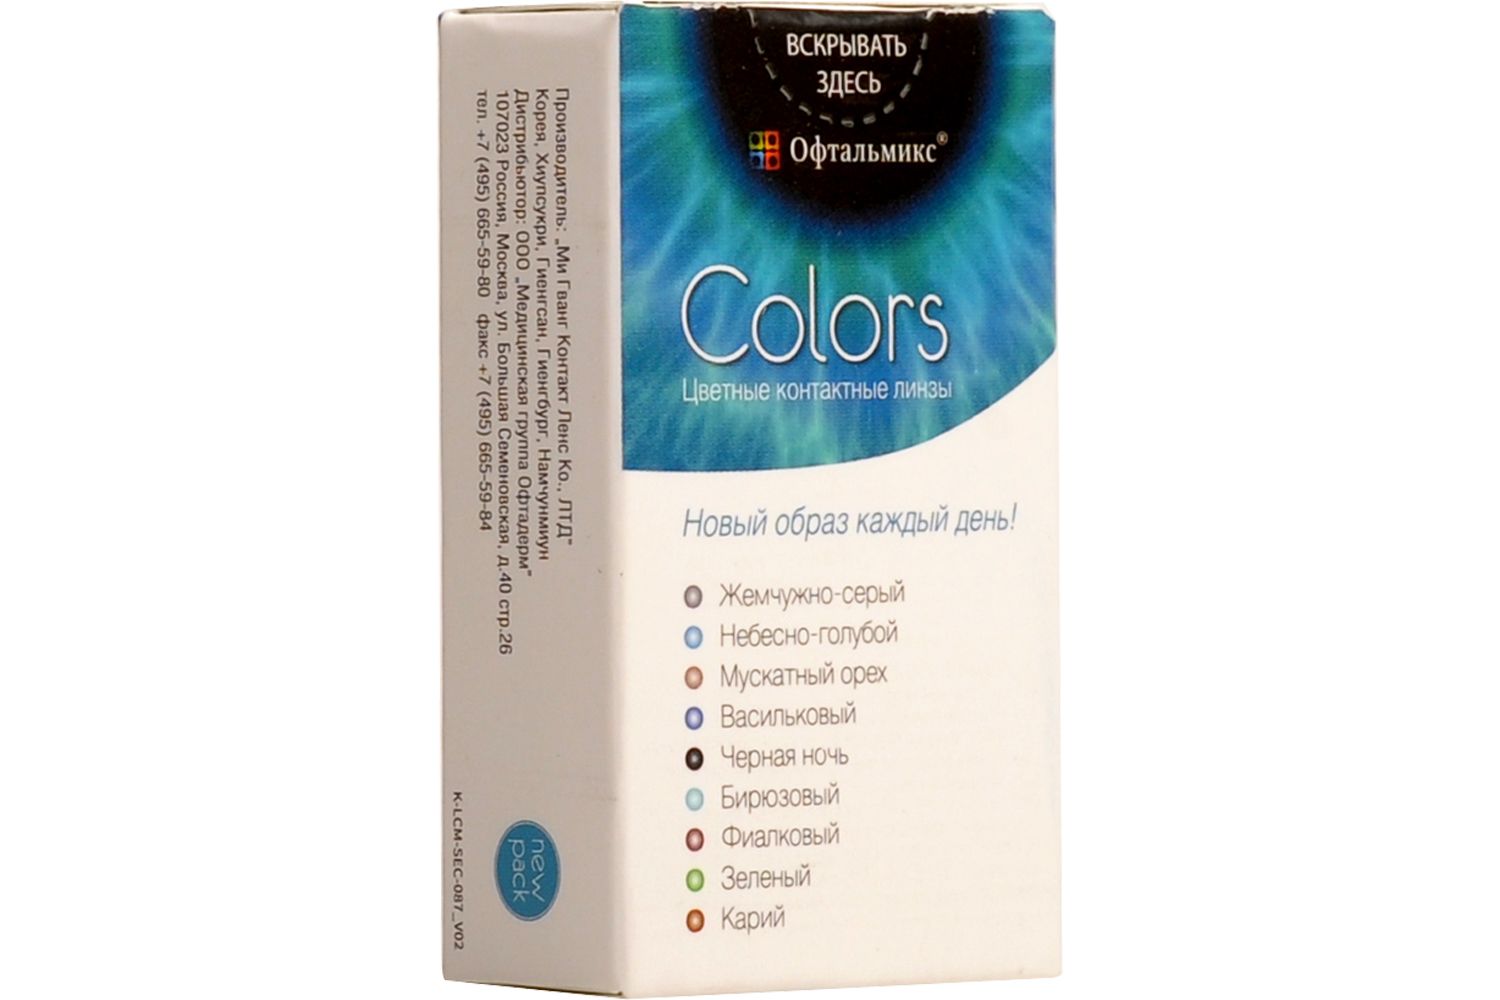 Купить Colors 2 линзы, Цветные контактные линзы Офтальмикс Colors, 2 шт. PWR -7, 50, R 8.6, Sky Blue